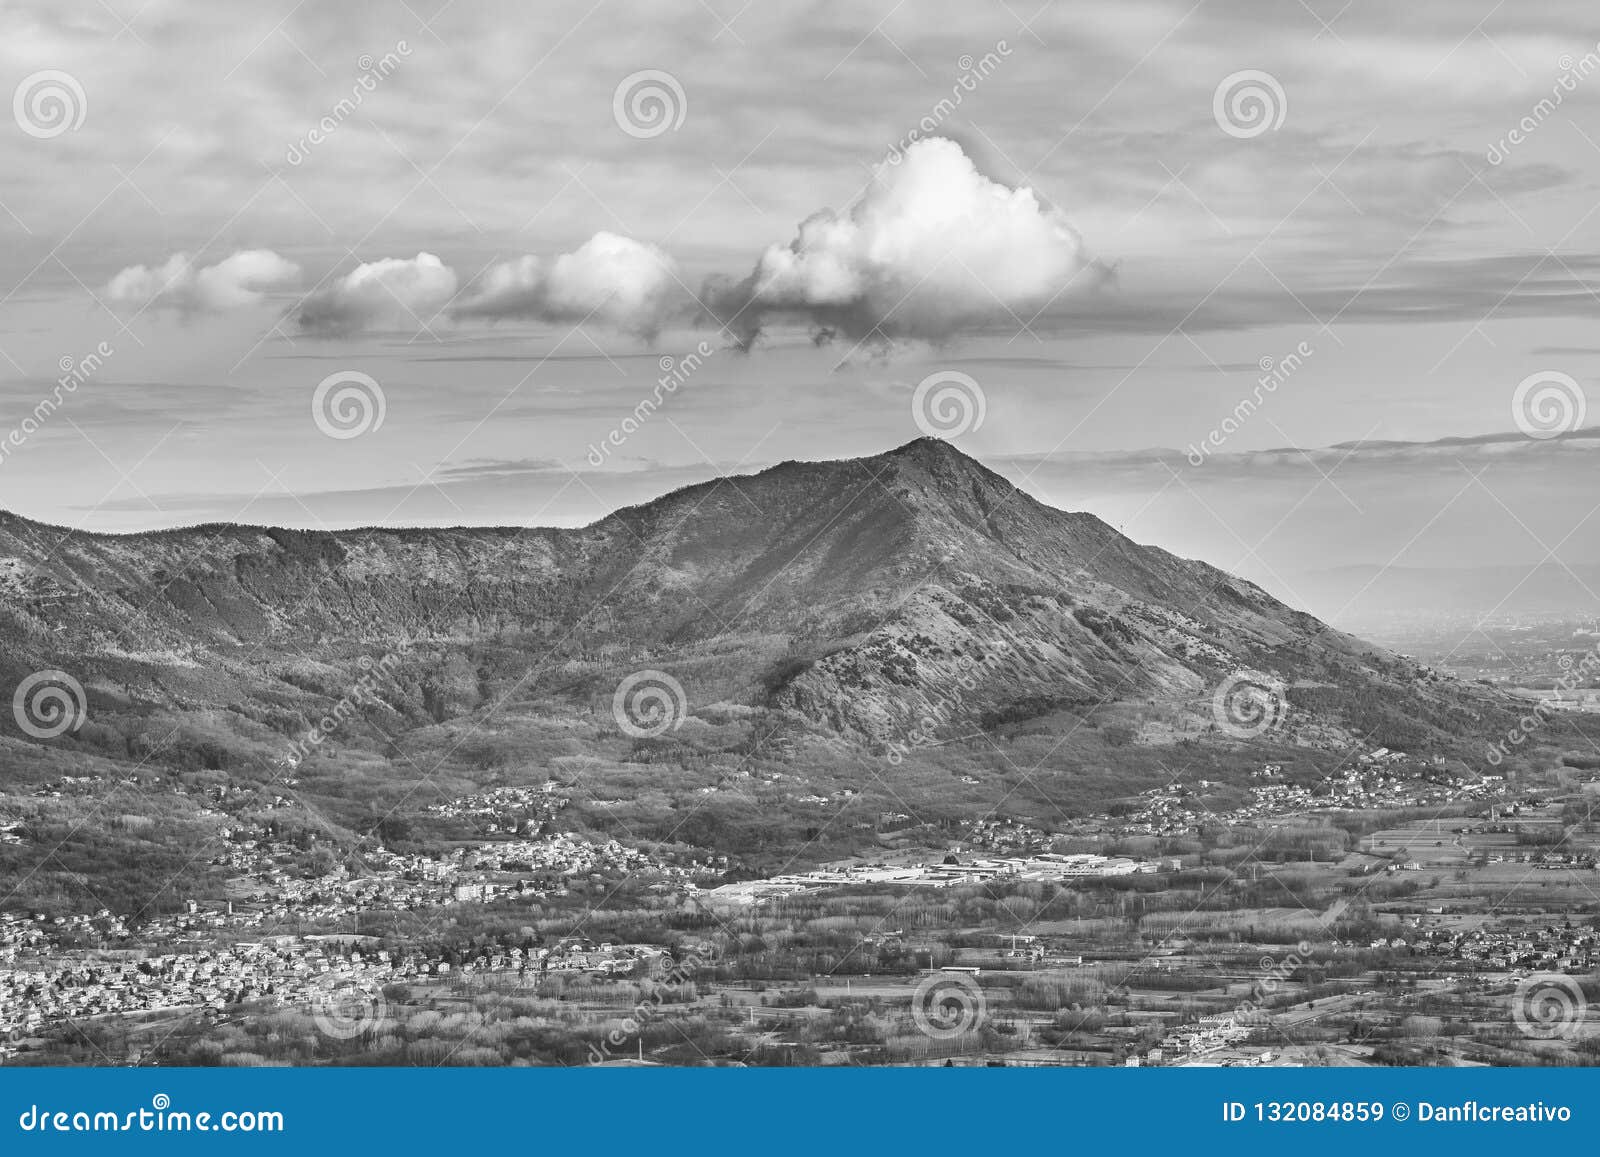 alpes mountains aerial view, piamonte, italy